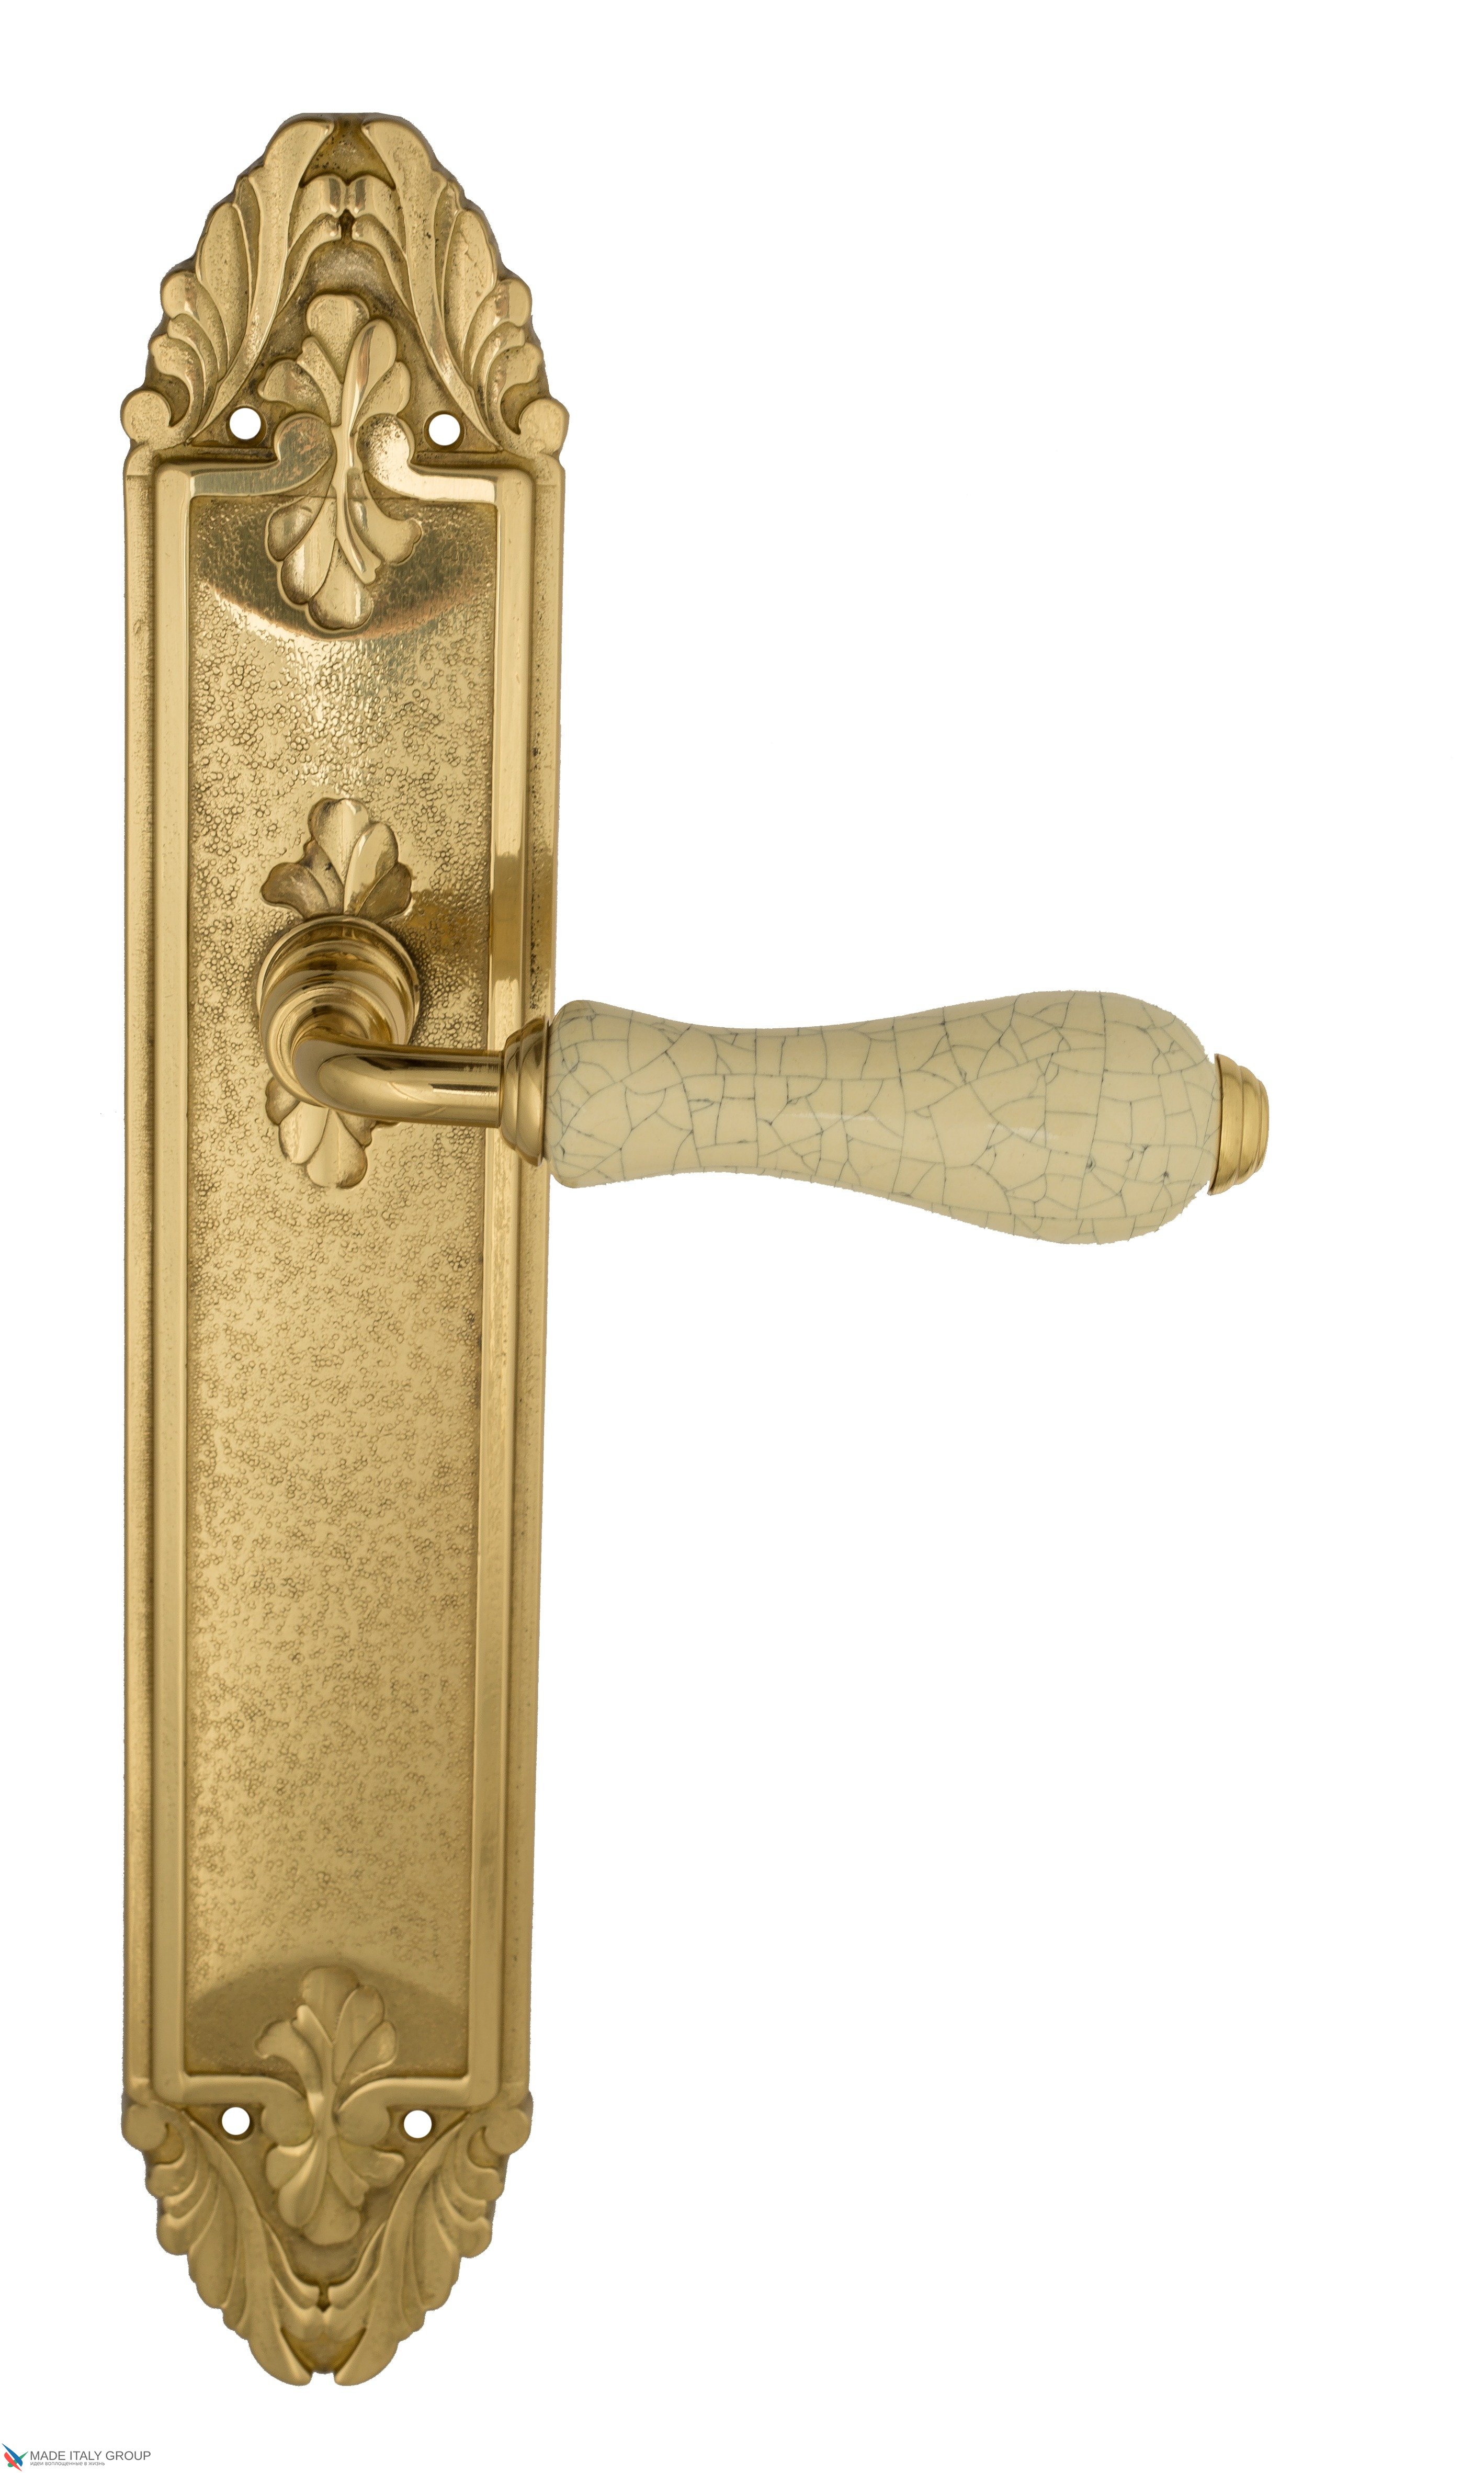 Дверная ручка Venezia "COLOSSEO" белая керамика паутинка на планке PL90 полированная латунь